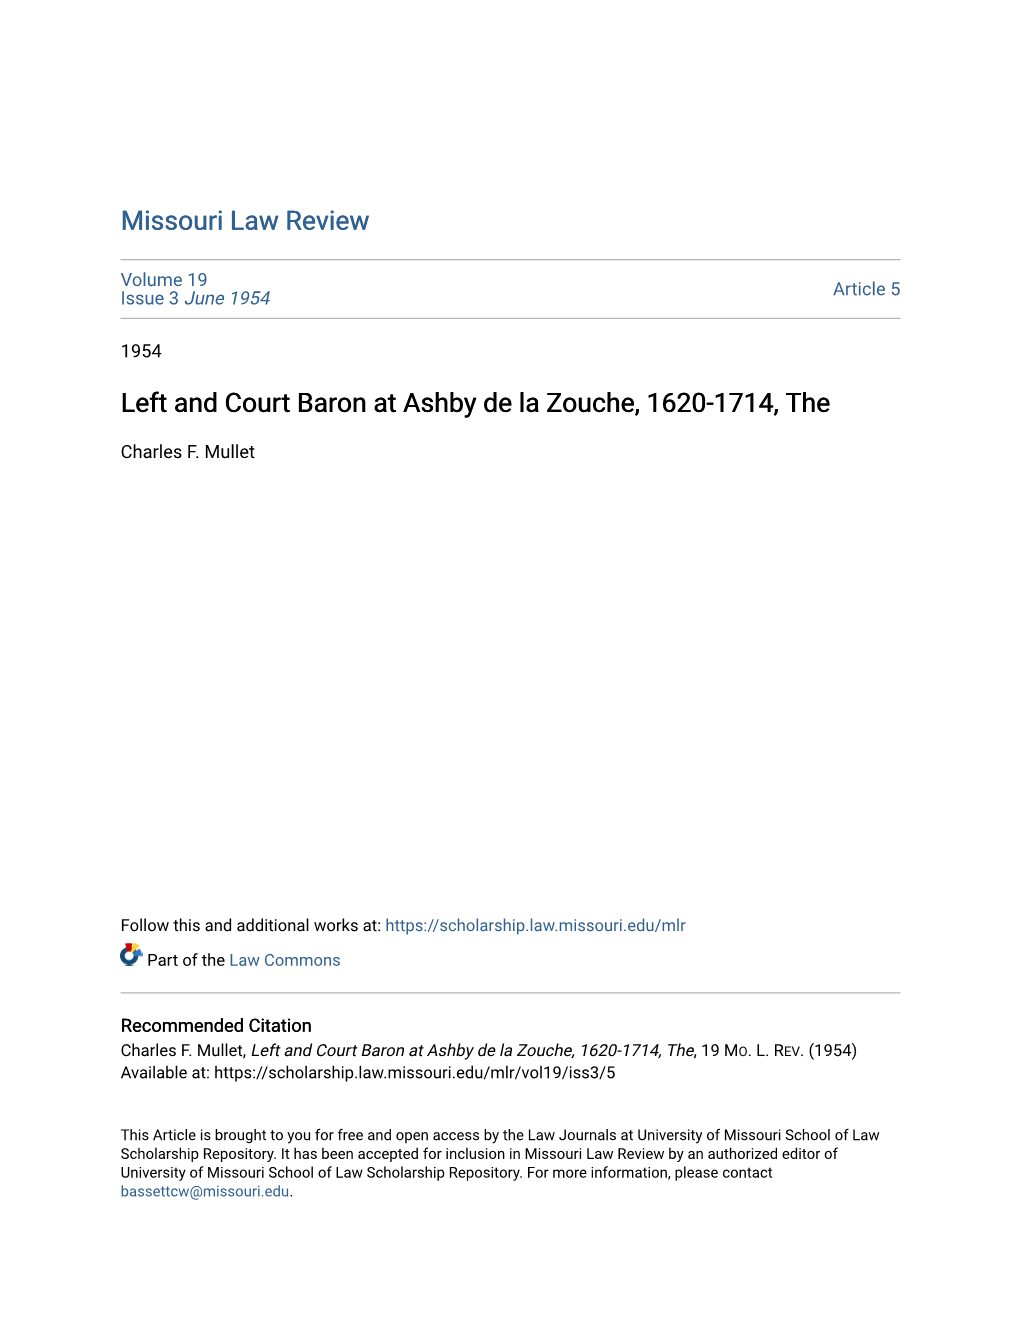 Left and Court Baron at Ashby De La Zouche, 1620-1714, The